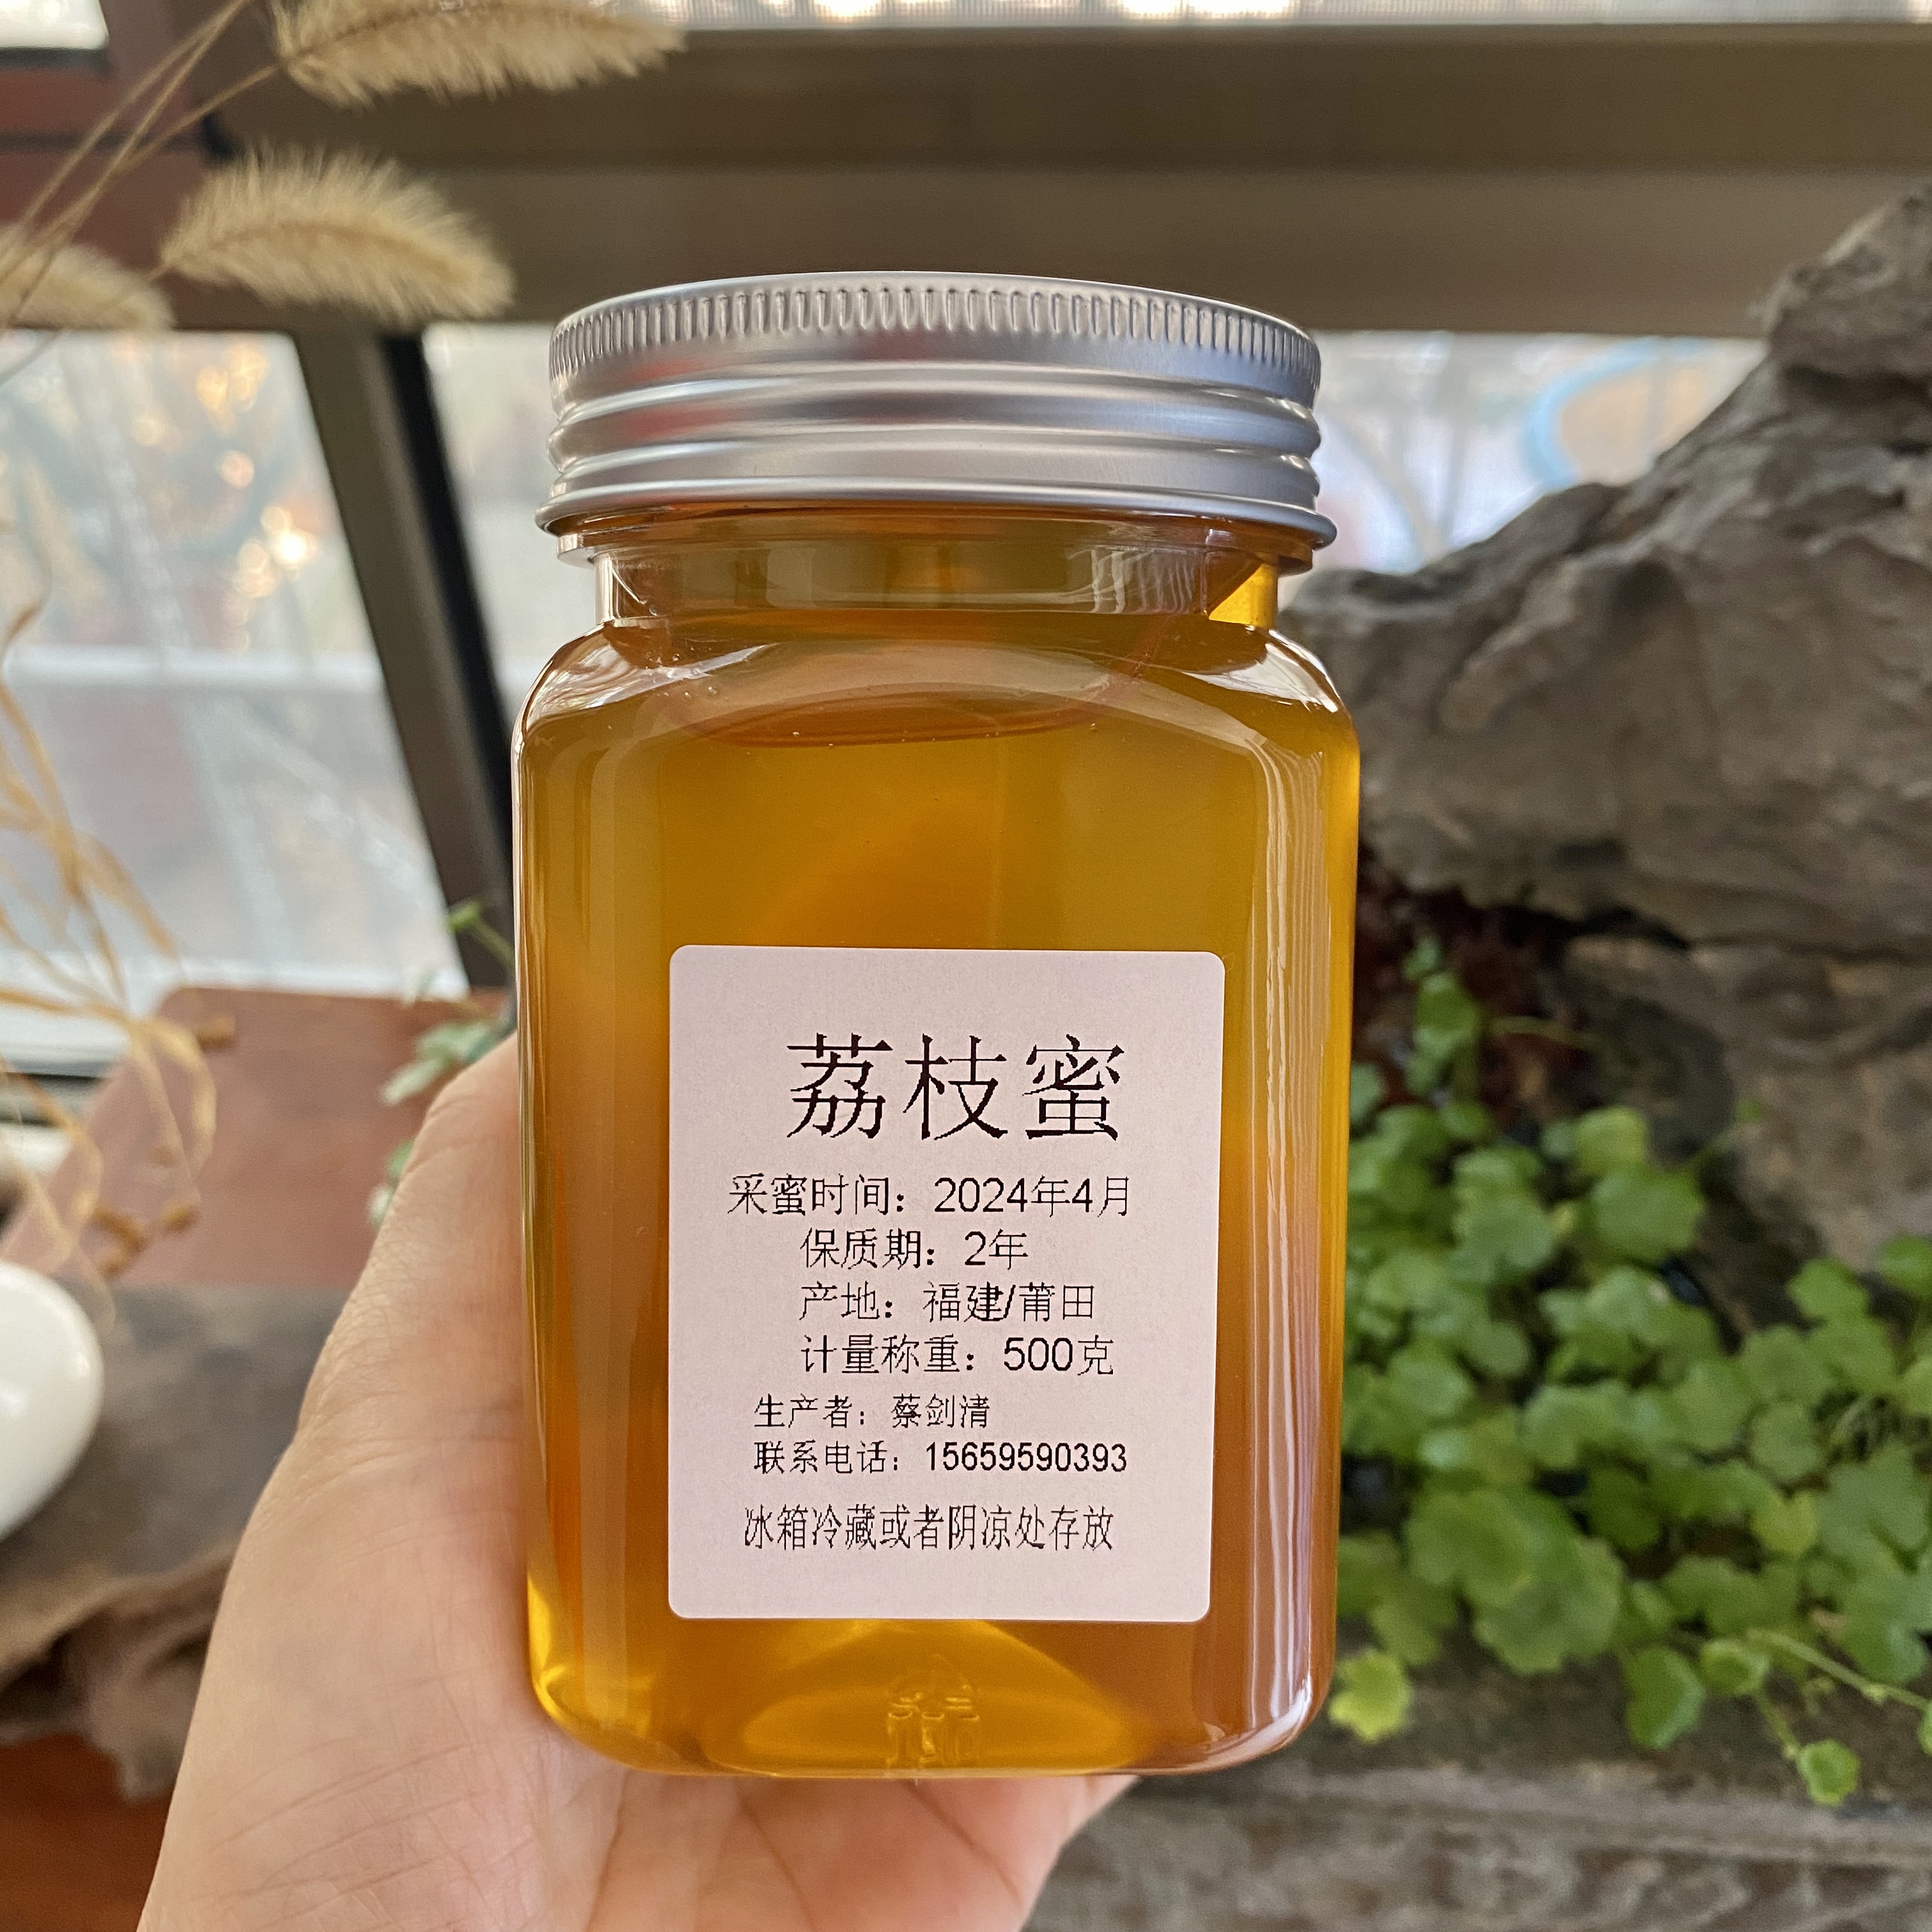 荔枝蜜 天然农家蜂蜜   荔枝蜂蜜 呱呱家春蜜24年4月新品上市 1斤